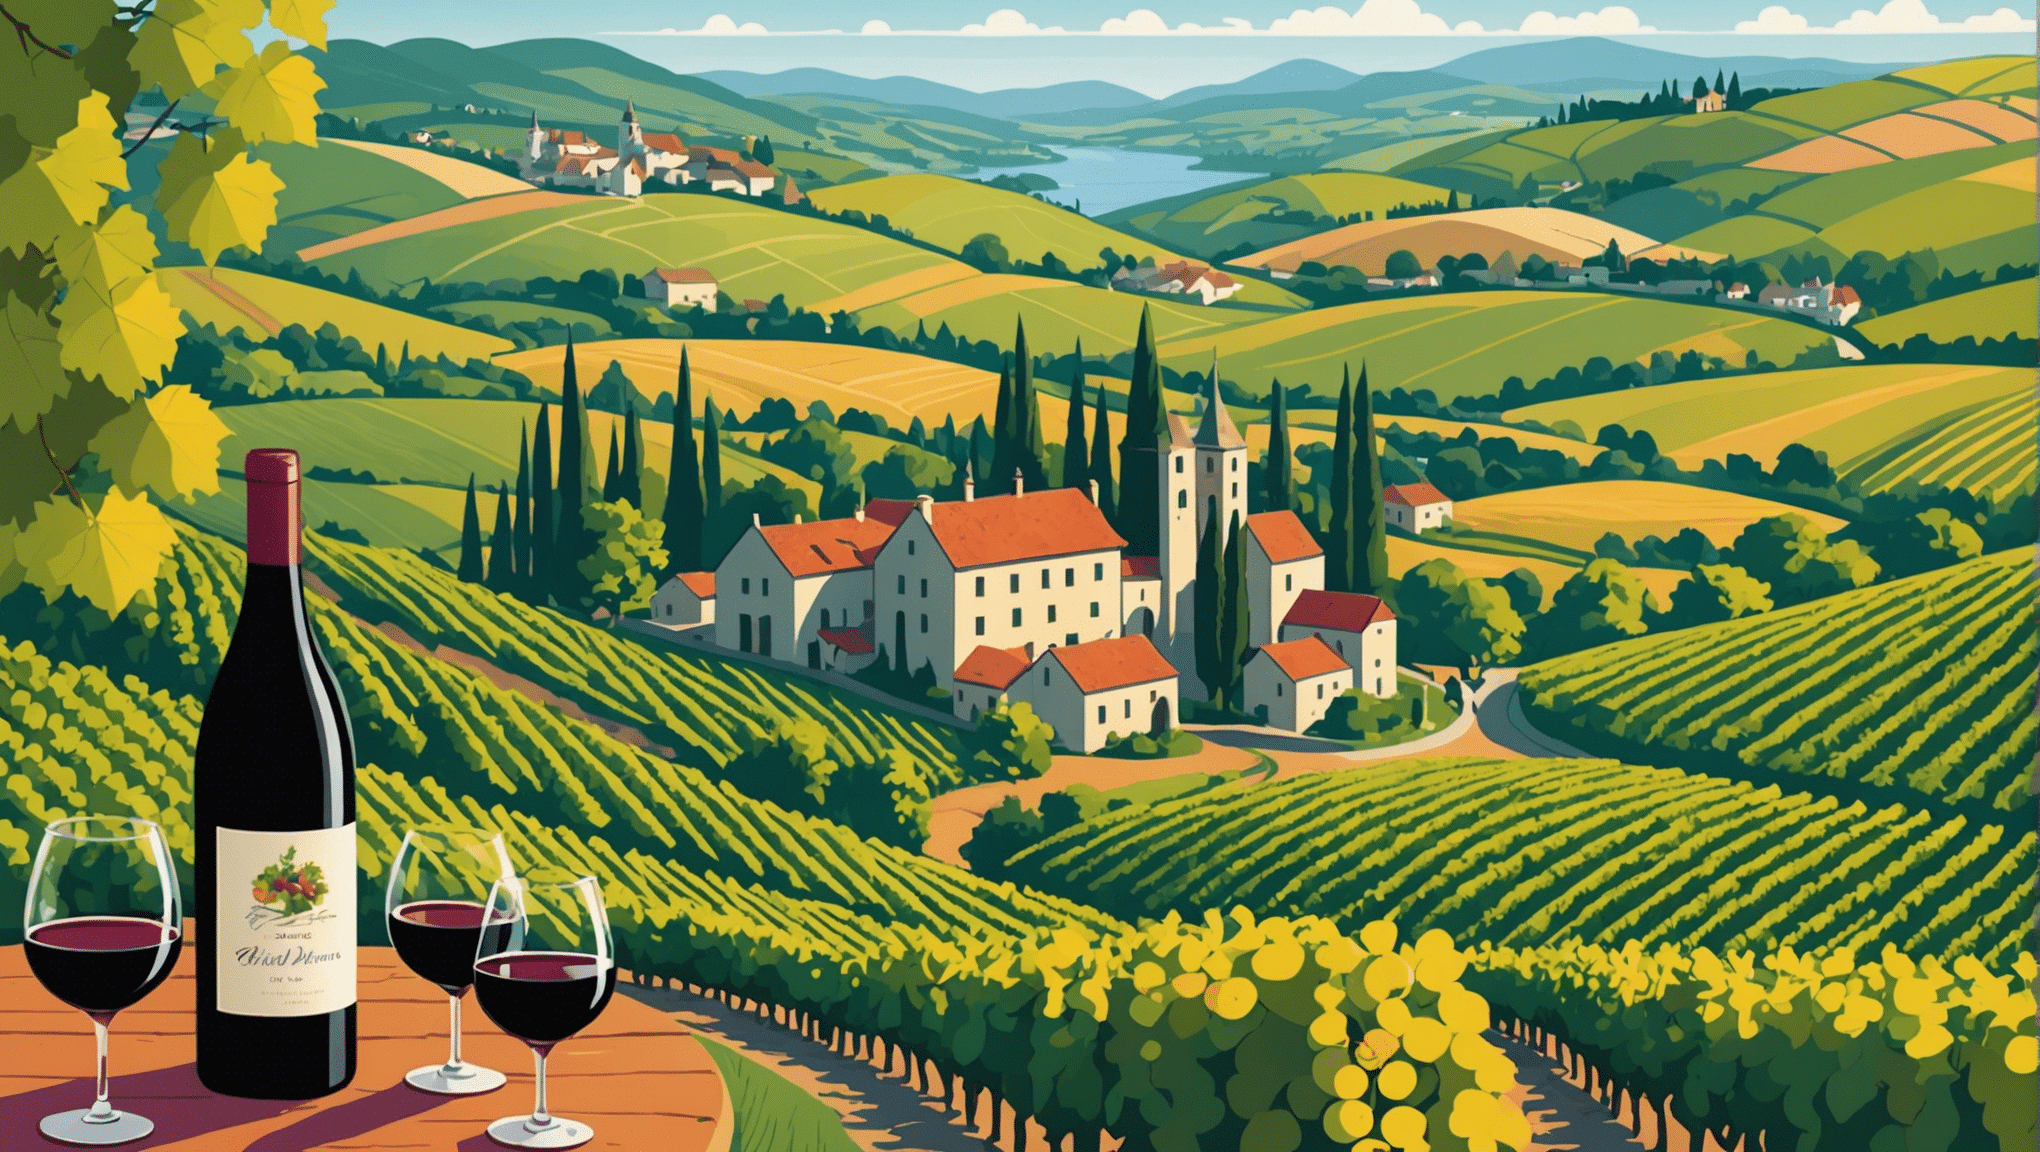 Descubre las rutas más bellas de la ruta del vino para explorar. disfruta de paisajes encantadores y catas inolvidables durante tu viaje enológico.